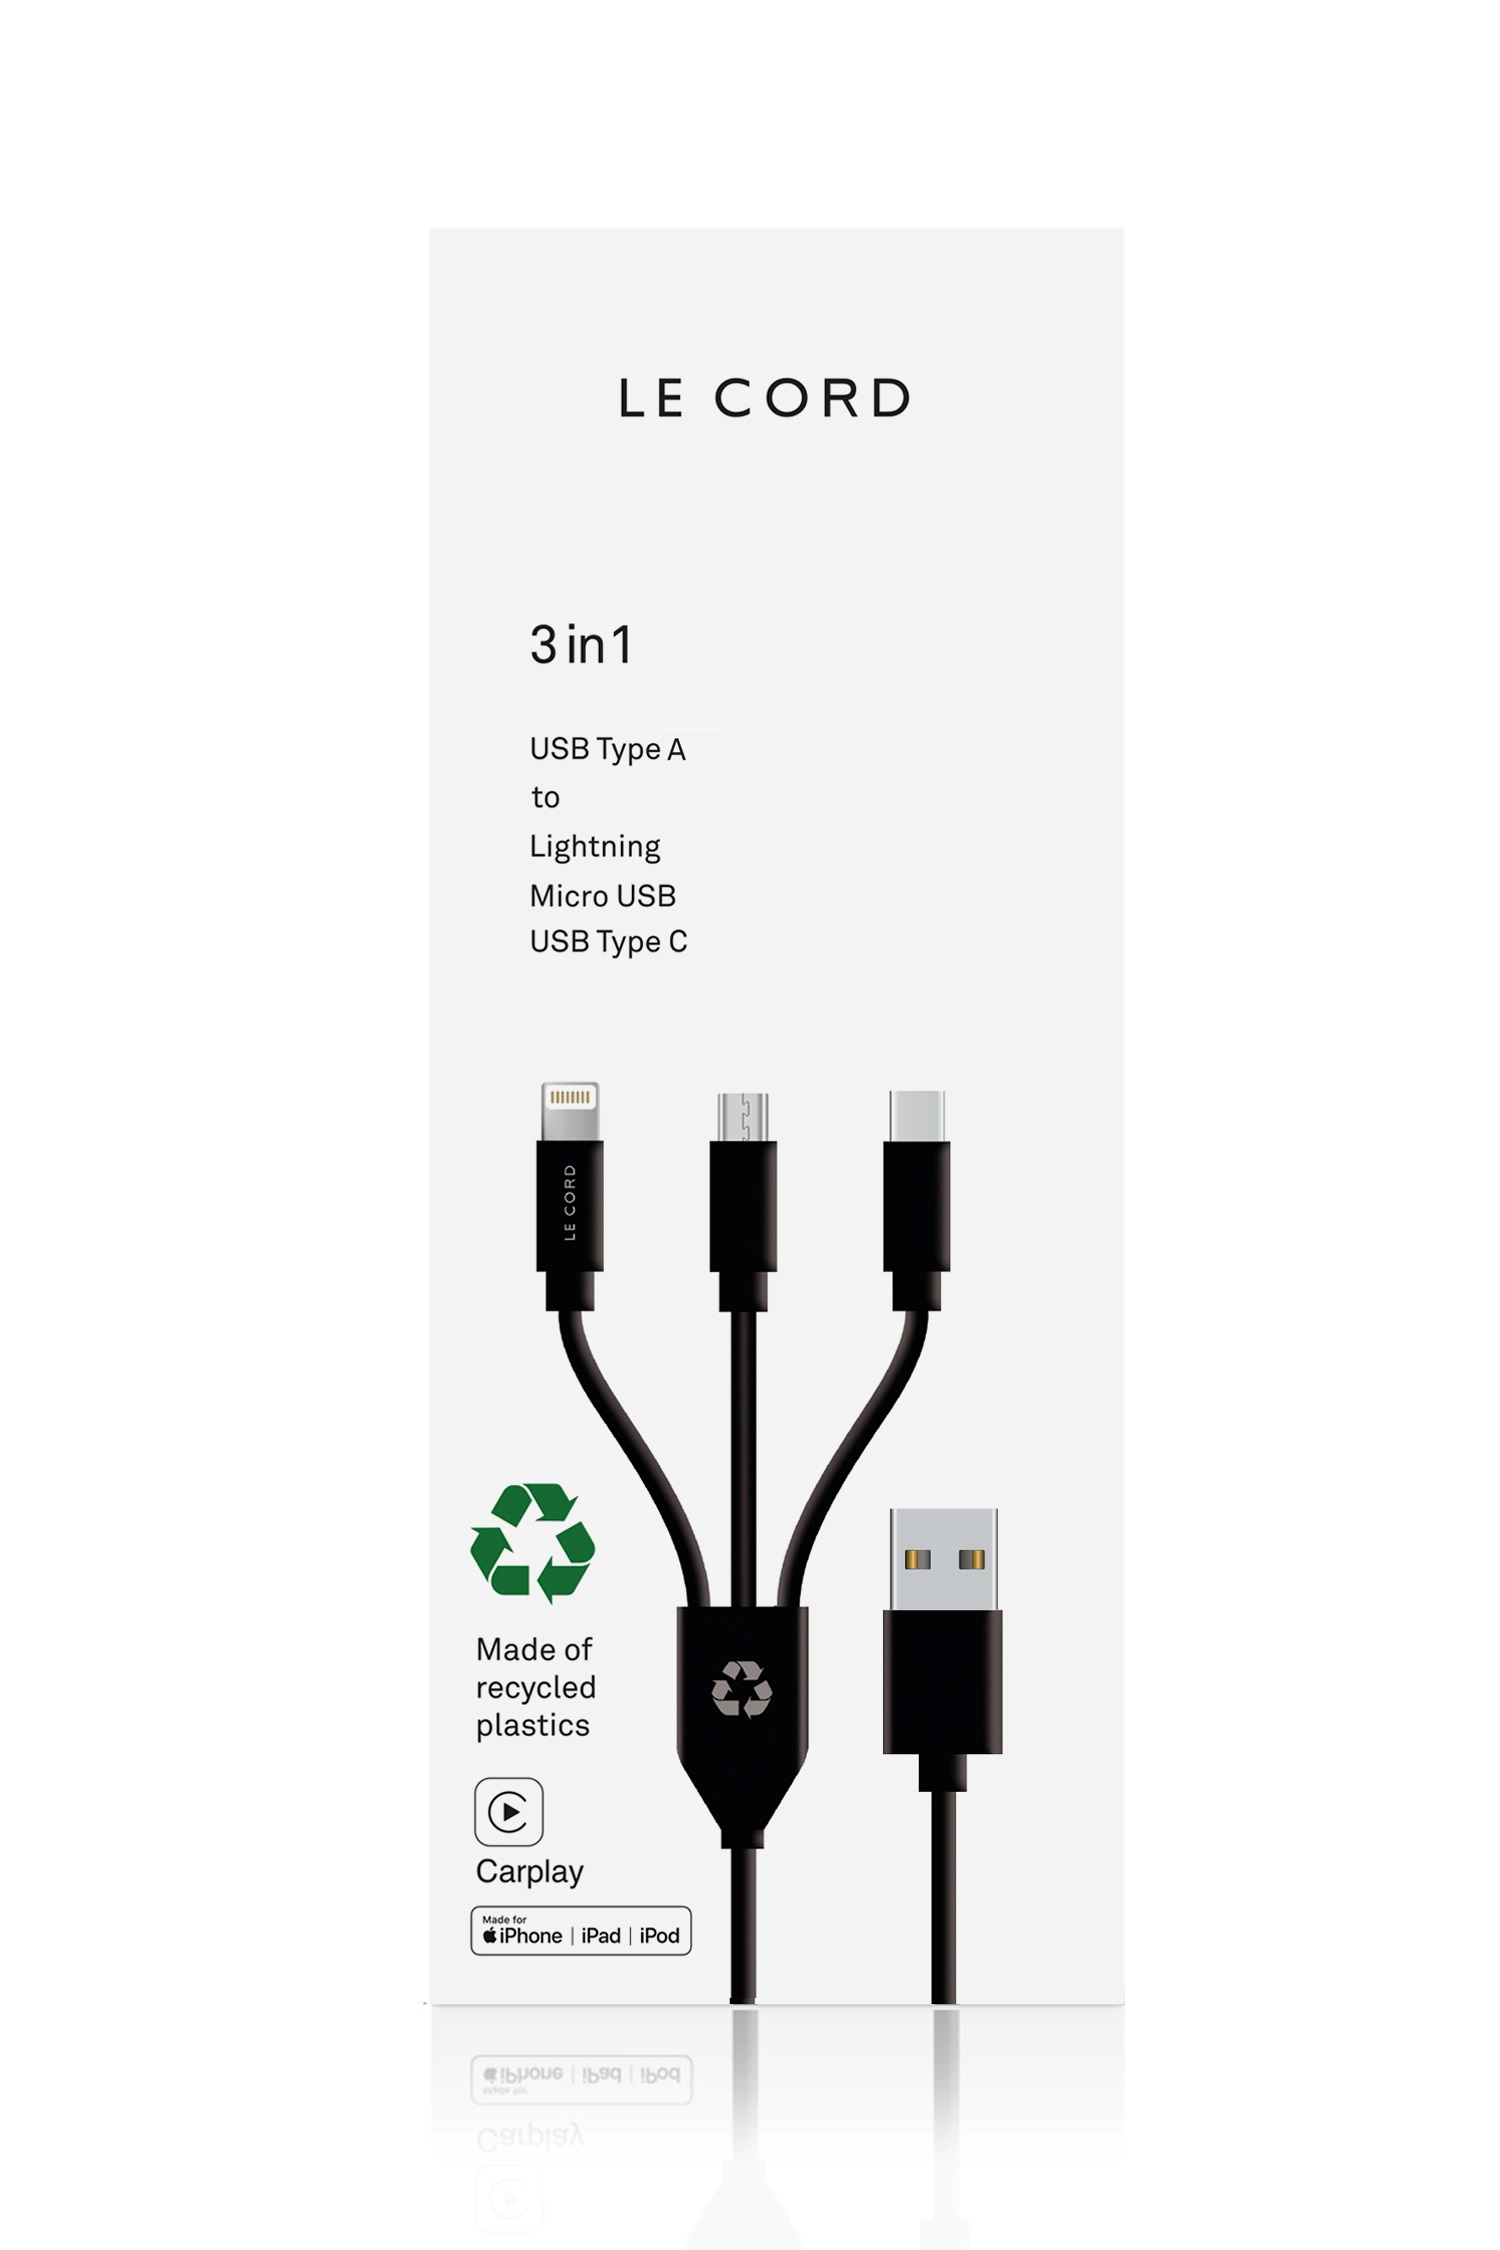 LE CORD Recycling, A Lightning B 1,2 Stecker Ladekabel & m, | USB Sync USB 3-in-1 C, zu | USB schwarz Micro